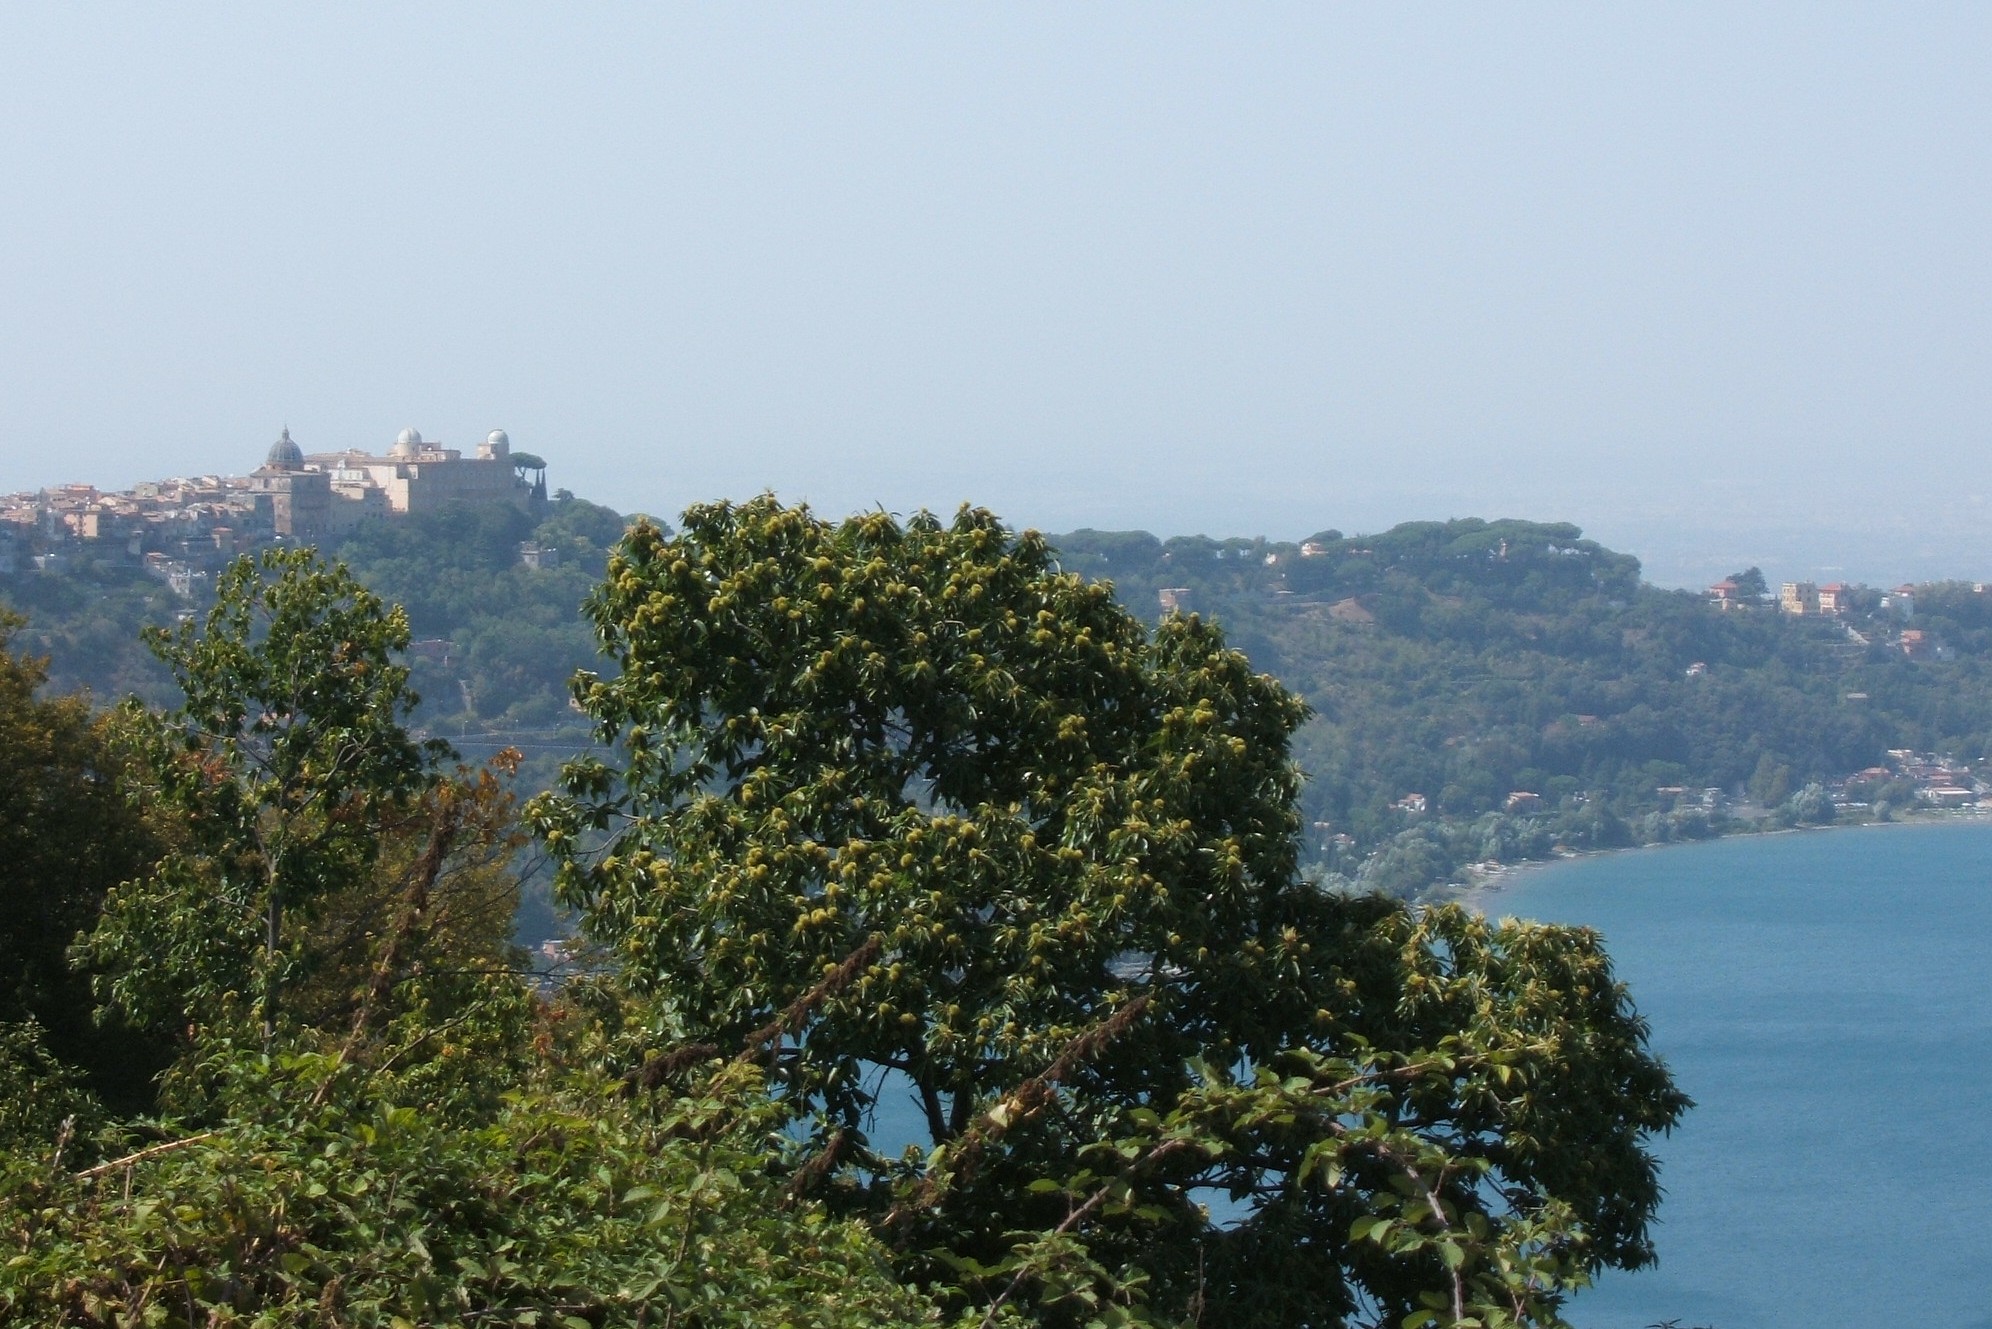 Päpstliche Sommerresidenz Castel Gandolfo mit See